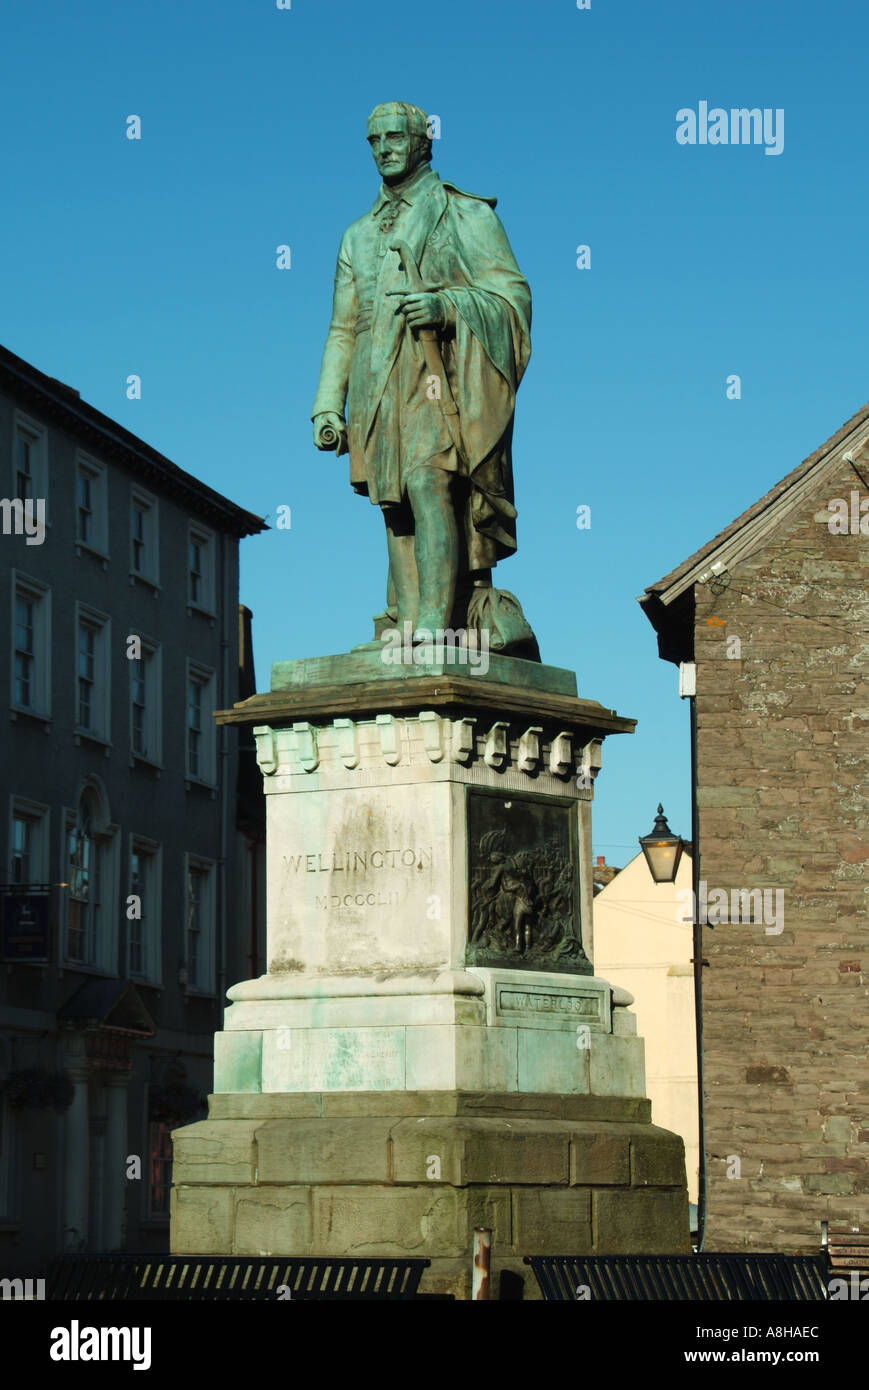 El centro de la ciudad de Brecon longitud completa estatua histórica sobre zócalo de Arthur Wellesley primer duque de Wellington en el Parque Nacional de Brecon Beacons Gales Powys UK Foto de stock